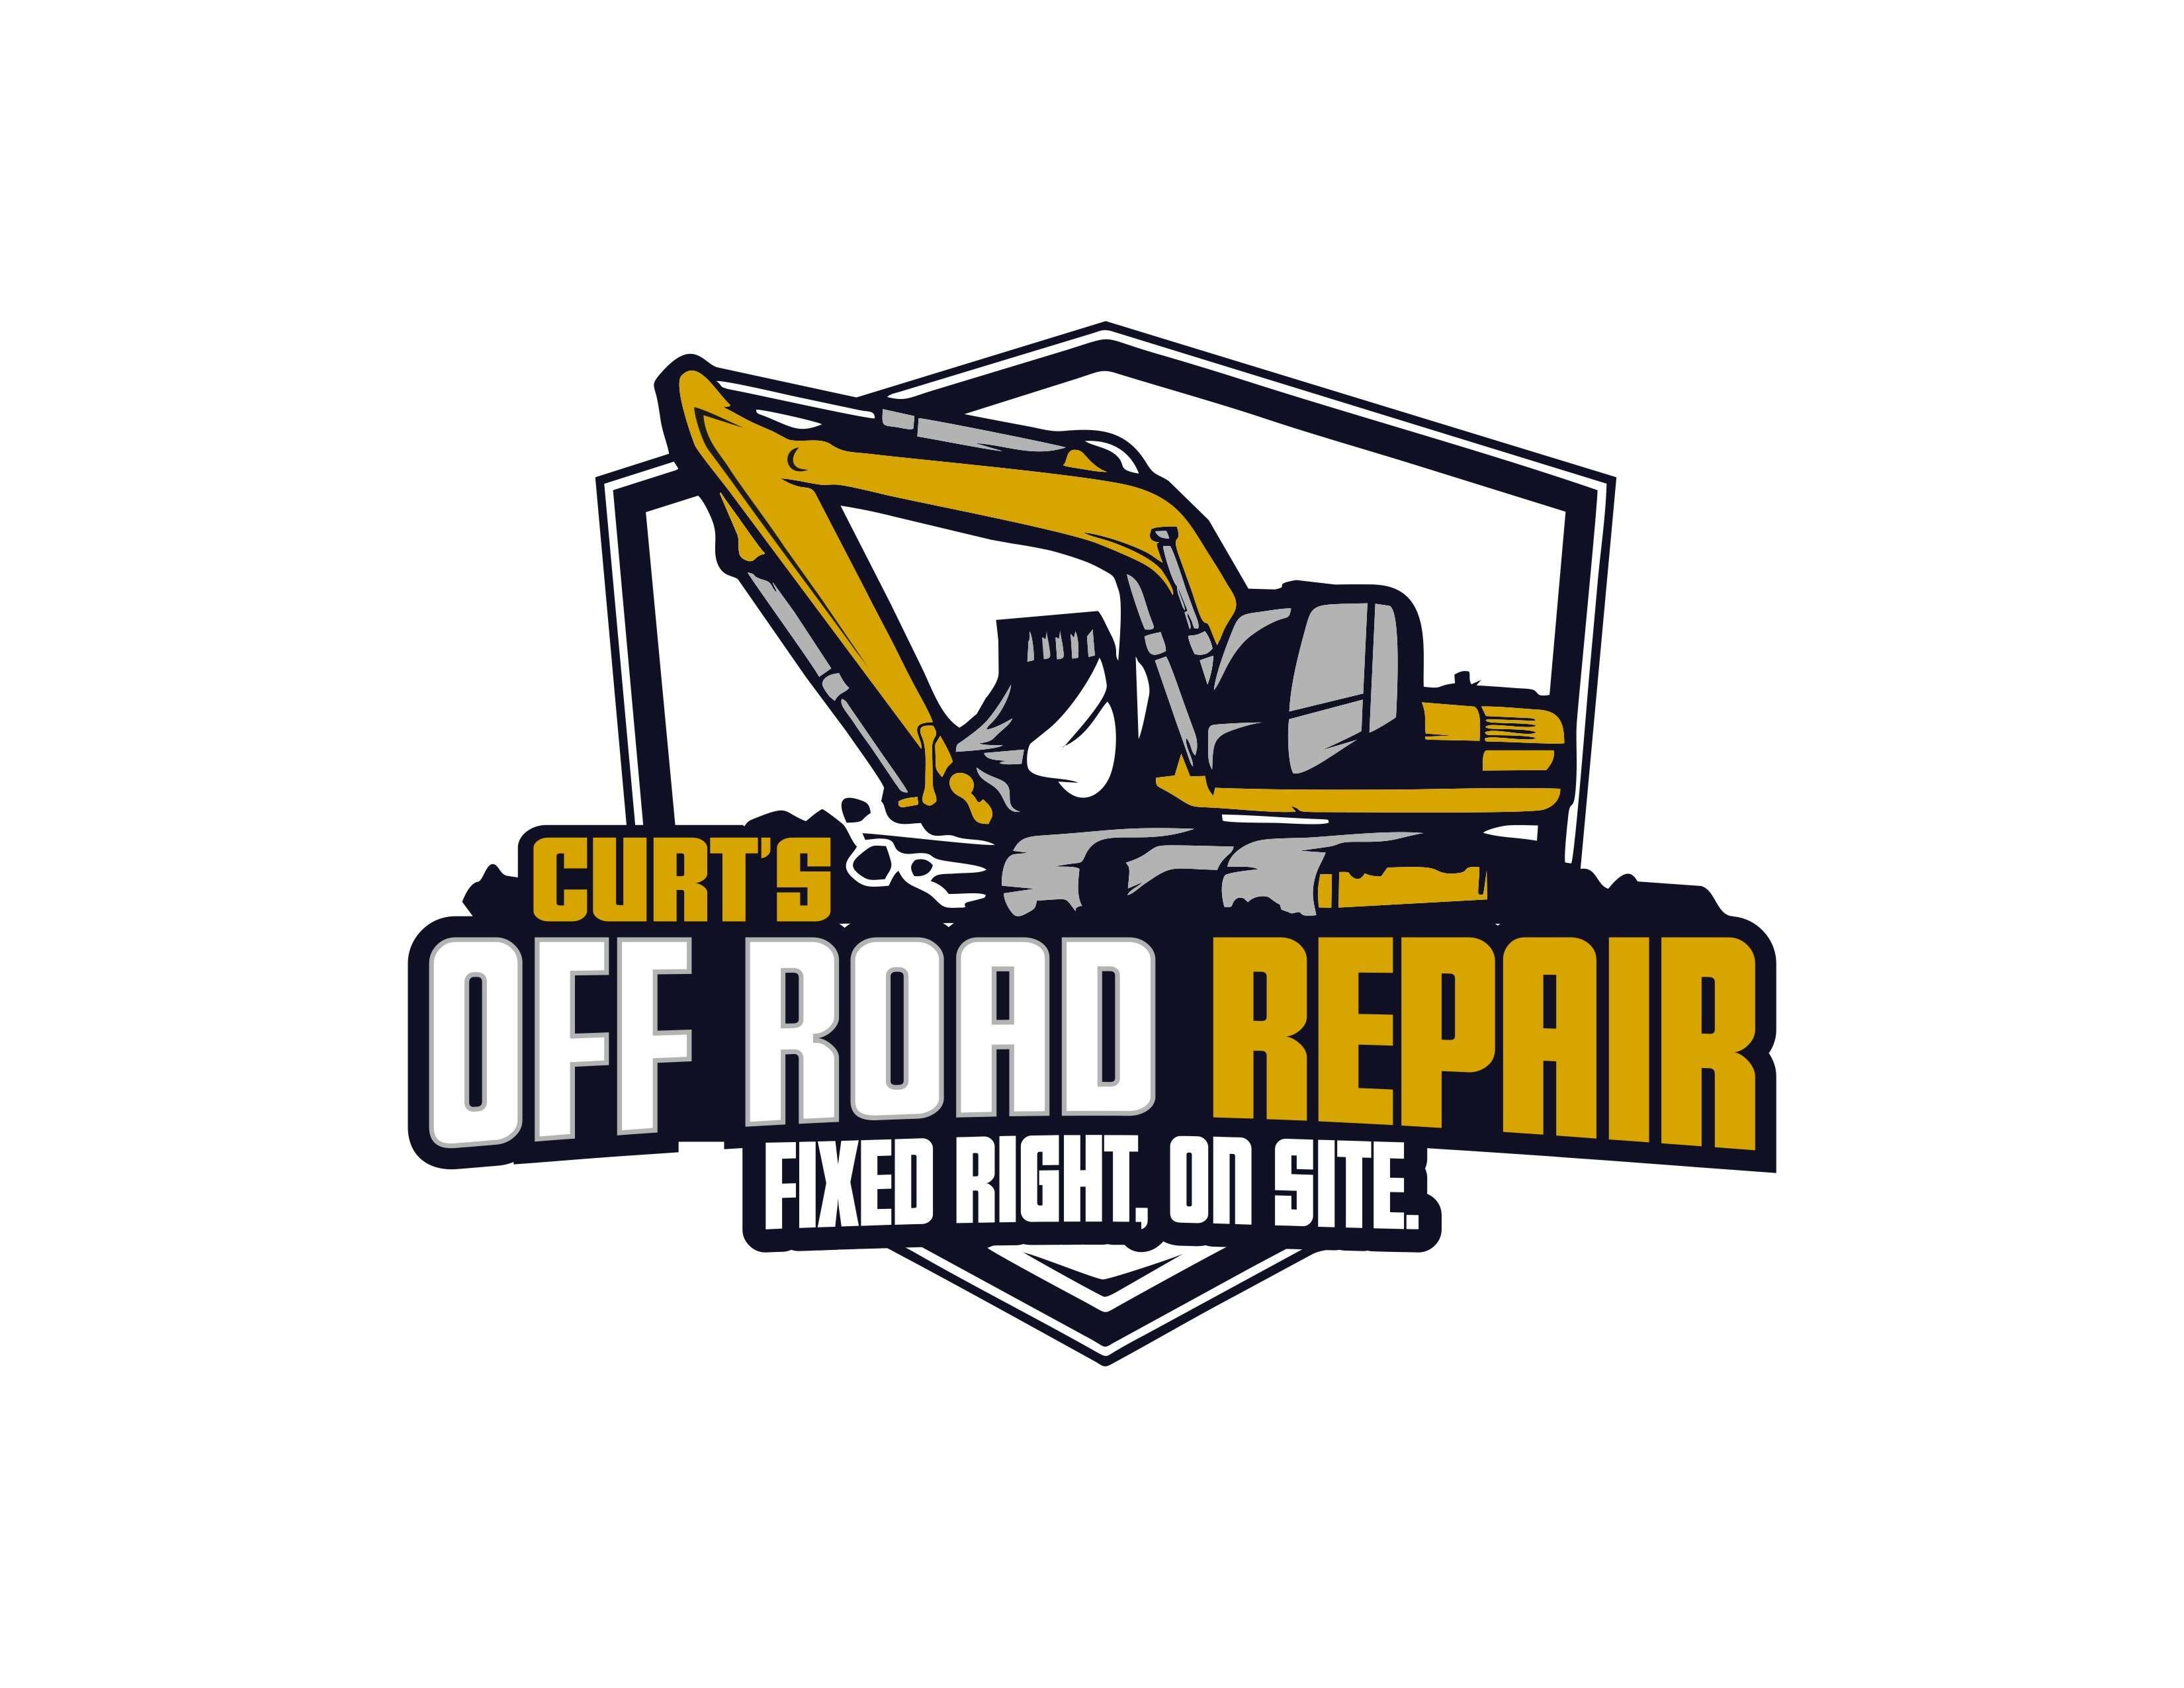 Curts Off Road Repair